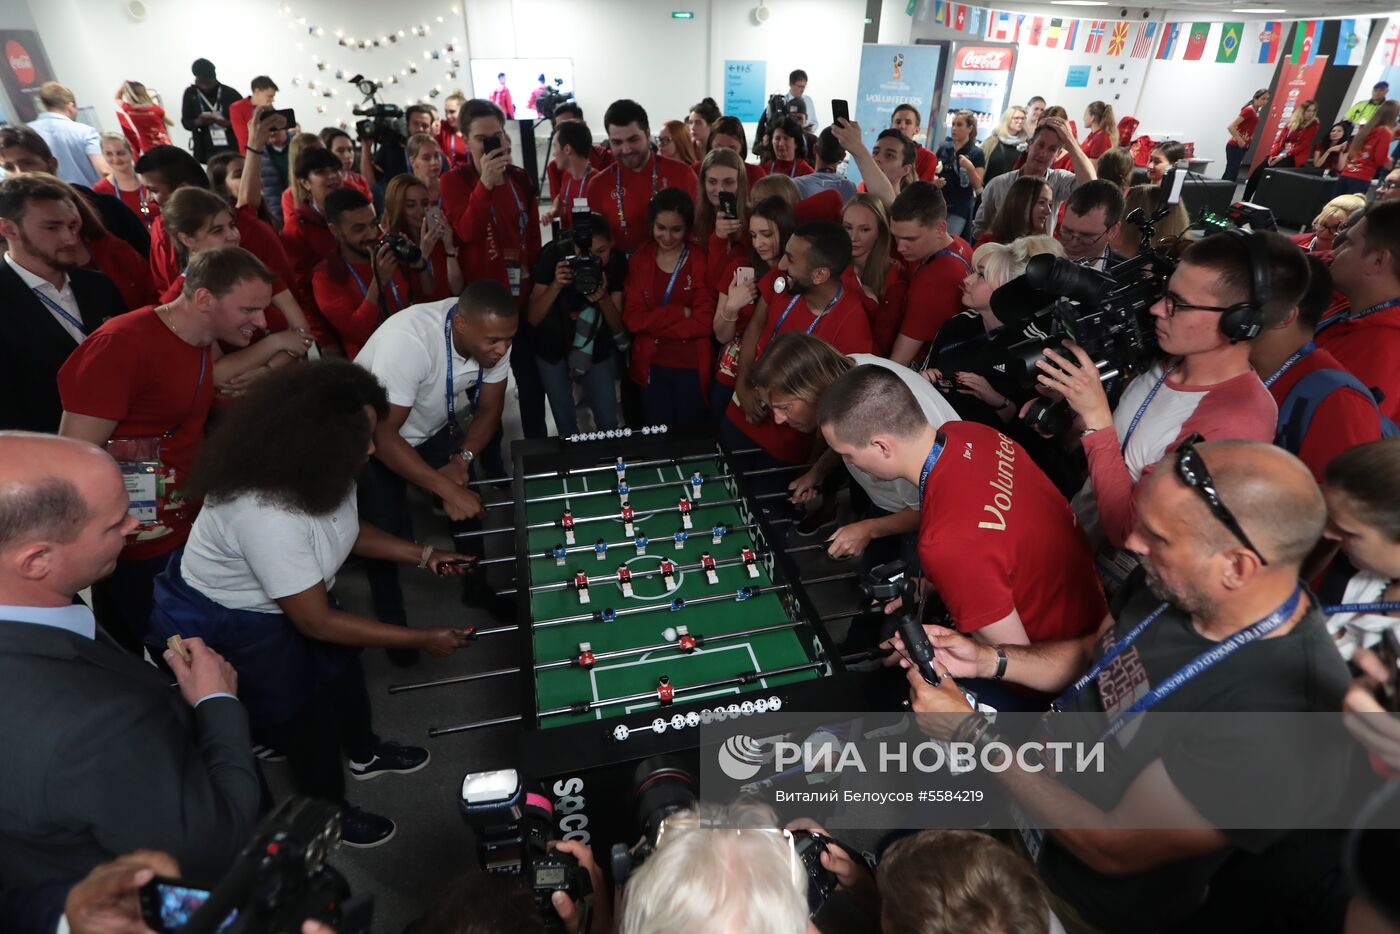 Волонтерский центр ЧМ-2018 по футболу в Москве